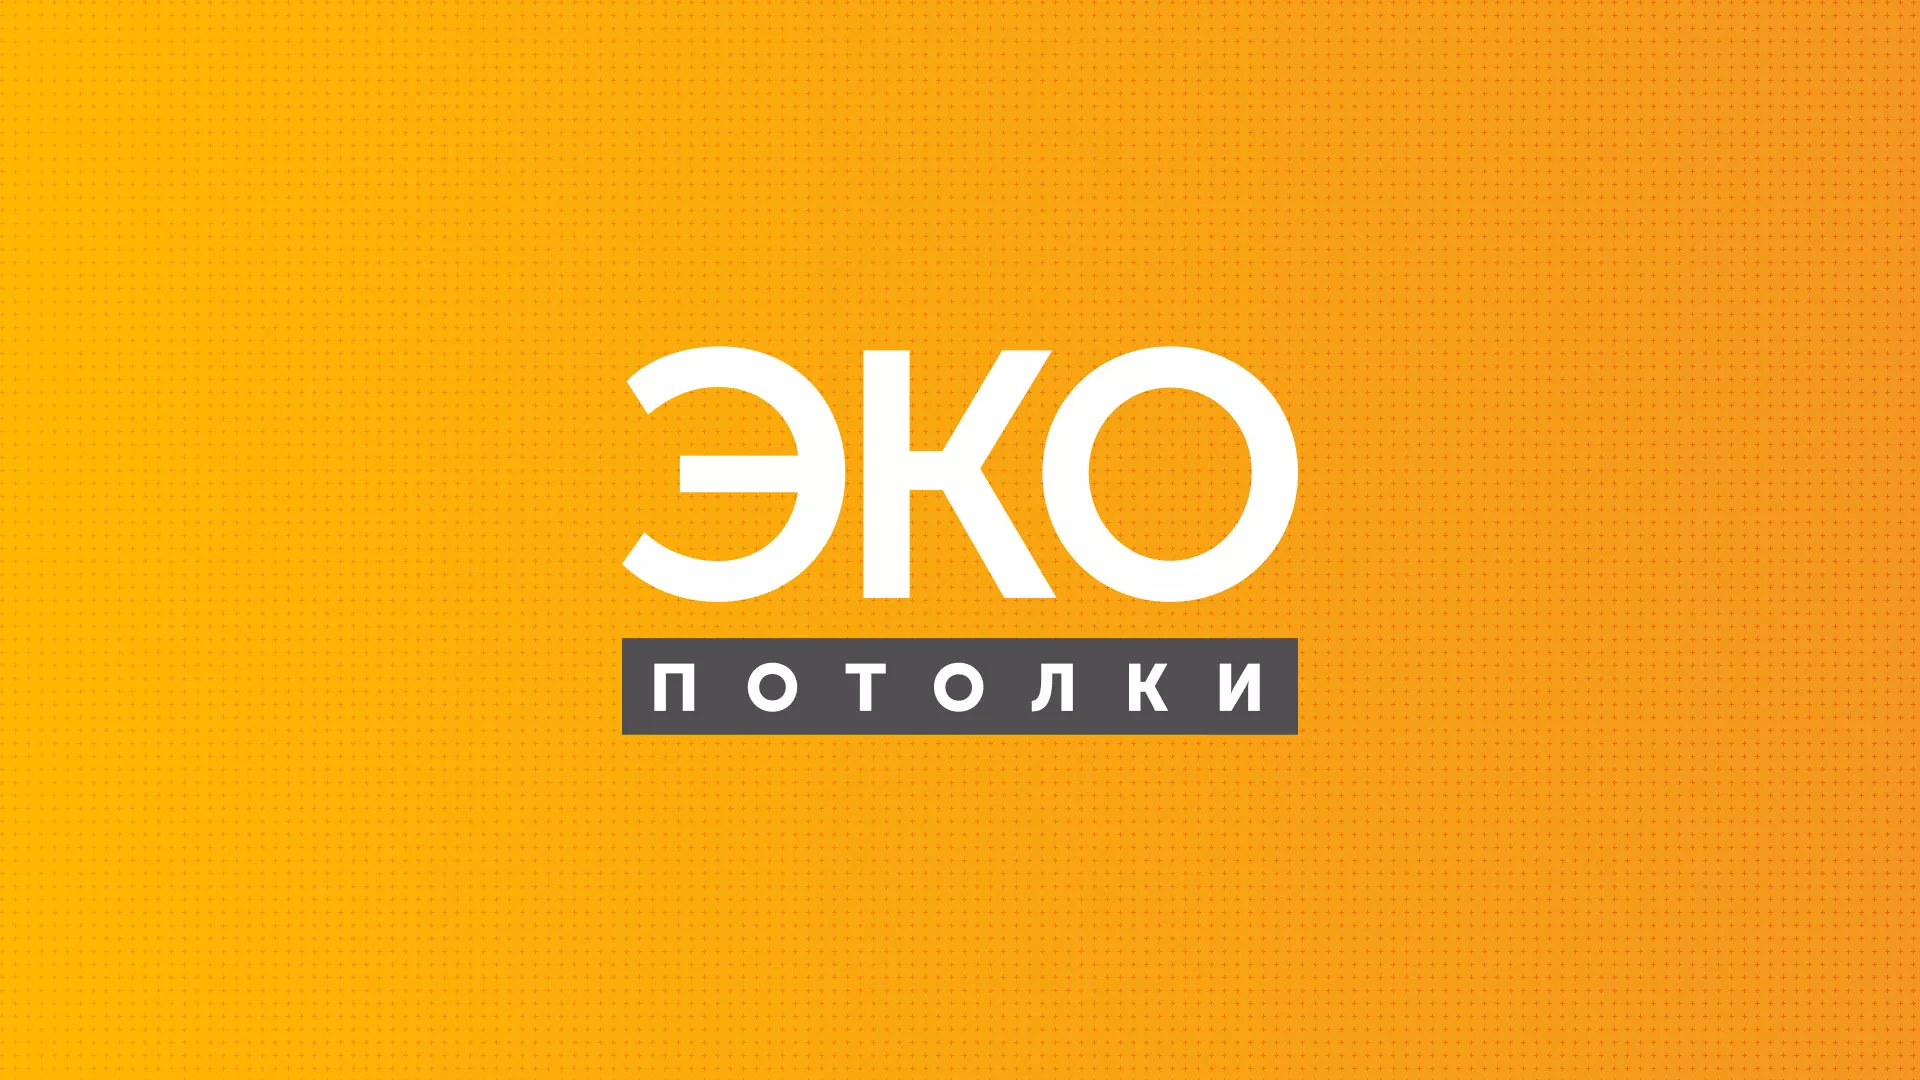 Разработка сайта по натяжным потолкам «Эко Потолки» в Камешково